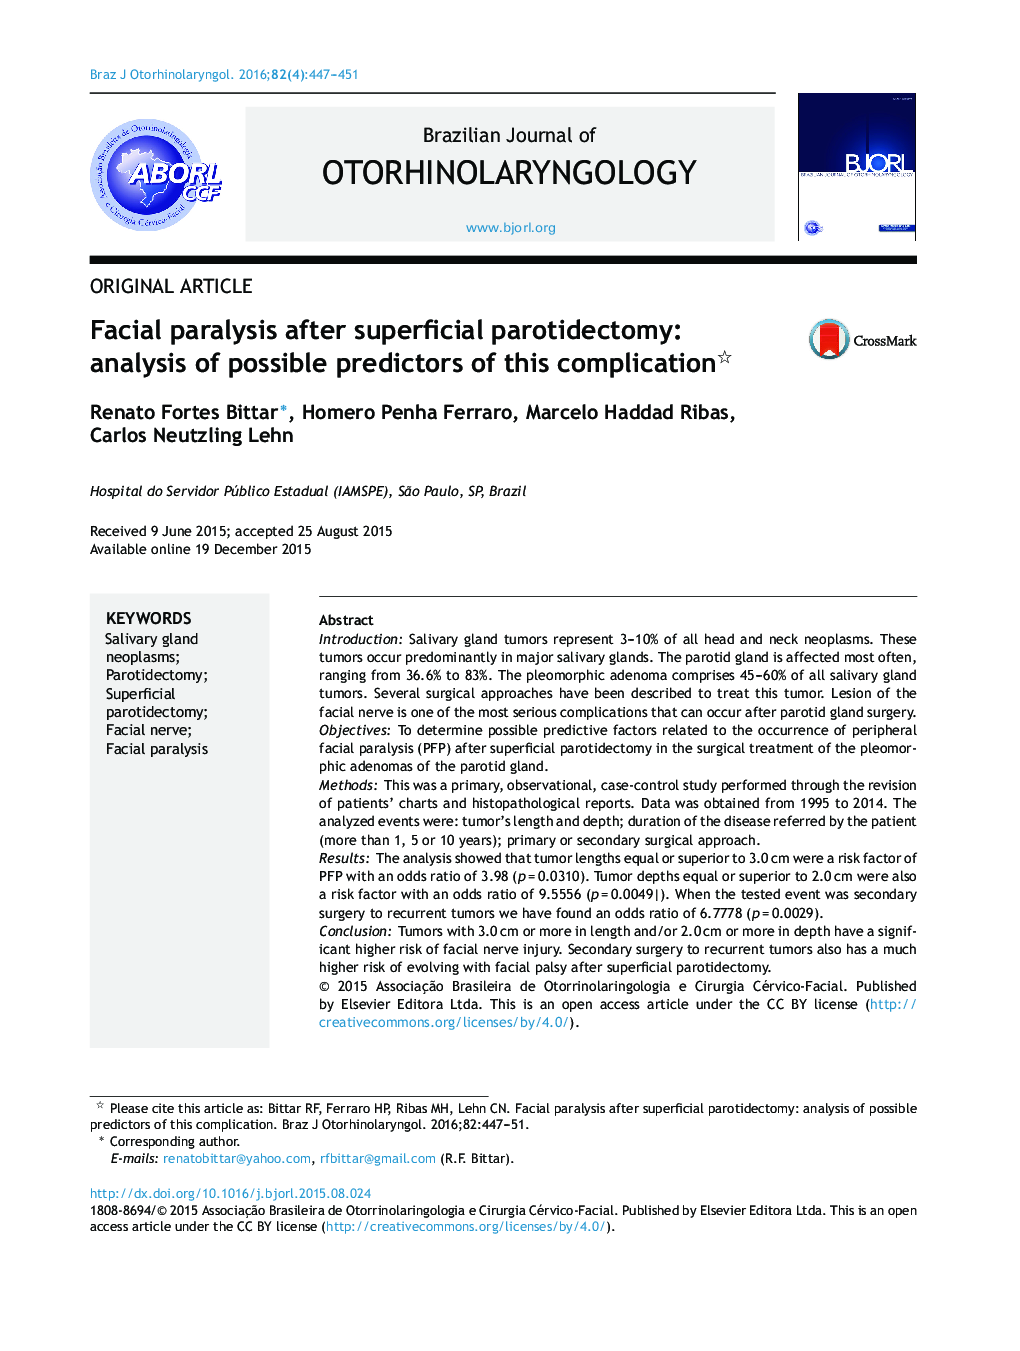 فلج صورت پس از پاروتیدکتومی سطح: تجزیه و تحلیل پیش بینی های احتمالی این عارضه 